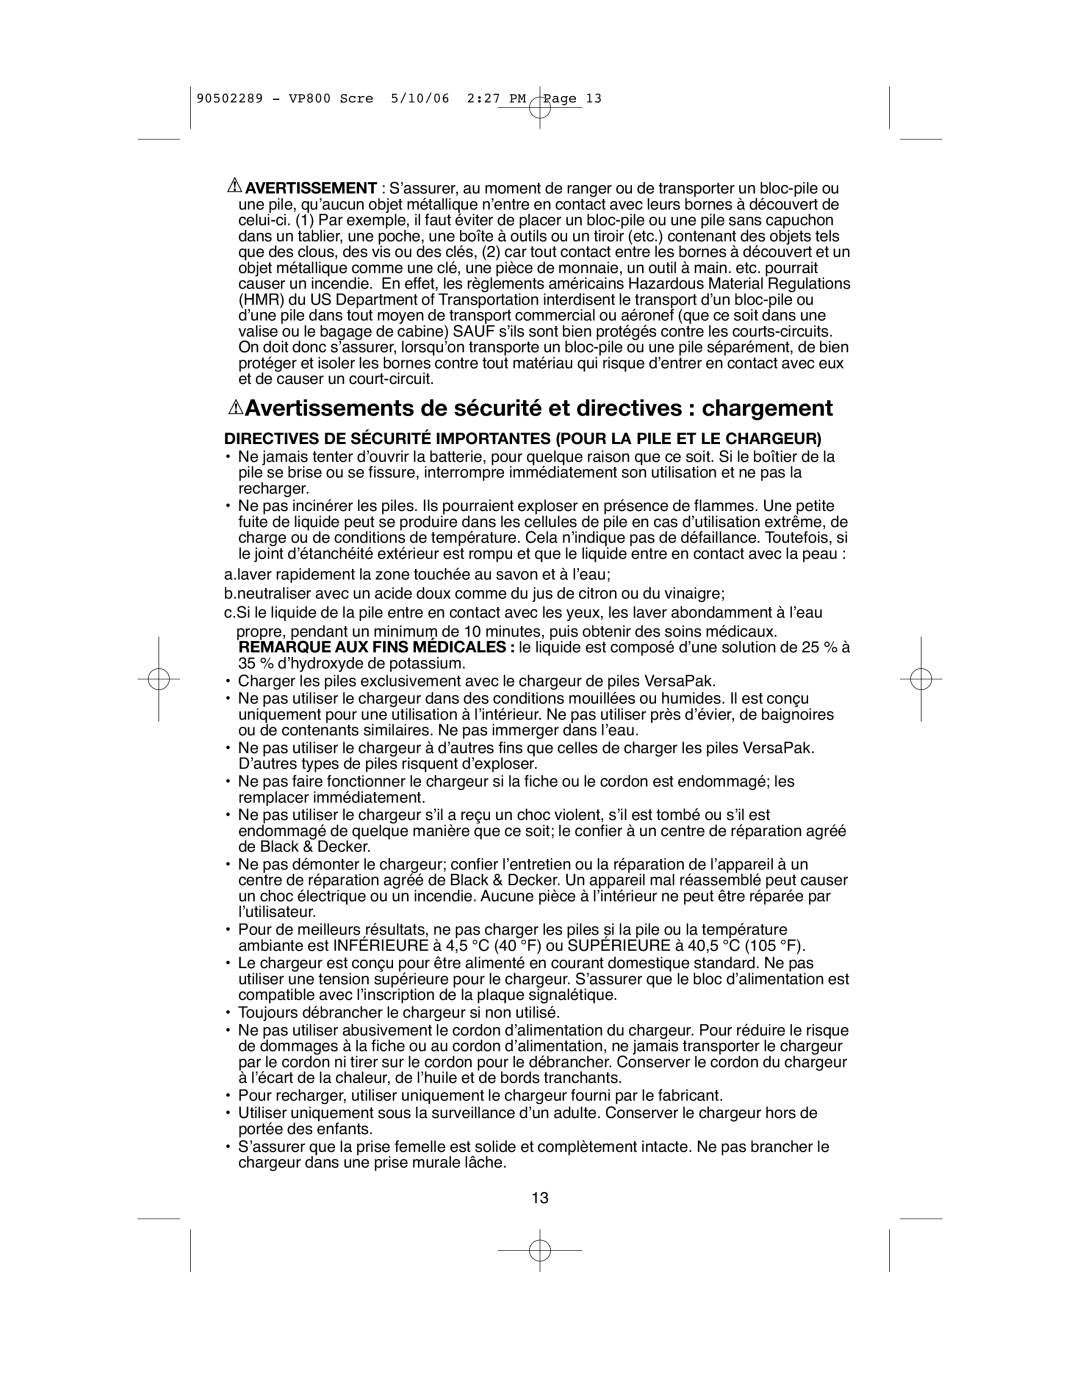 Black & Decker VP800 instruction manual Avertissements de sécurité et directives chargement 